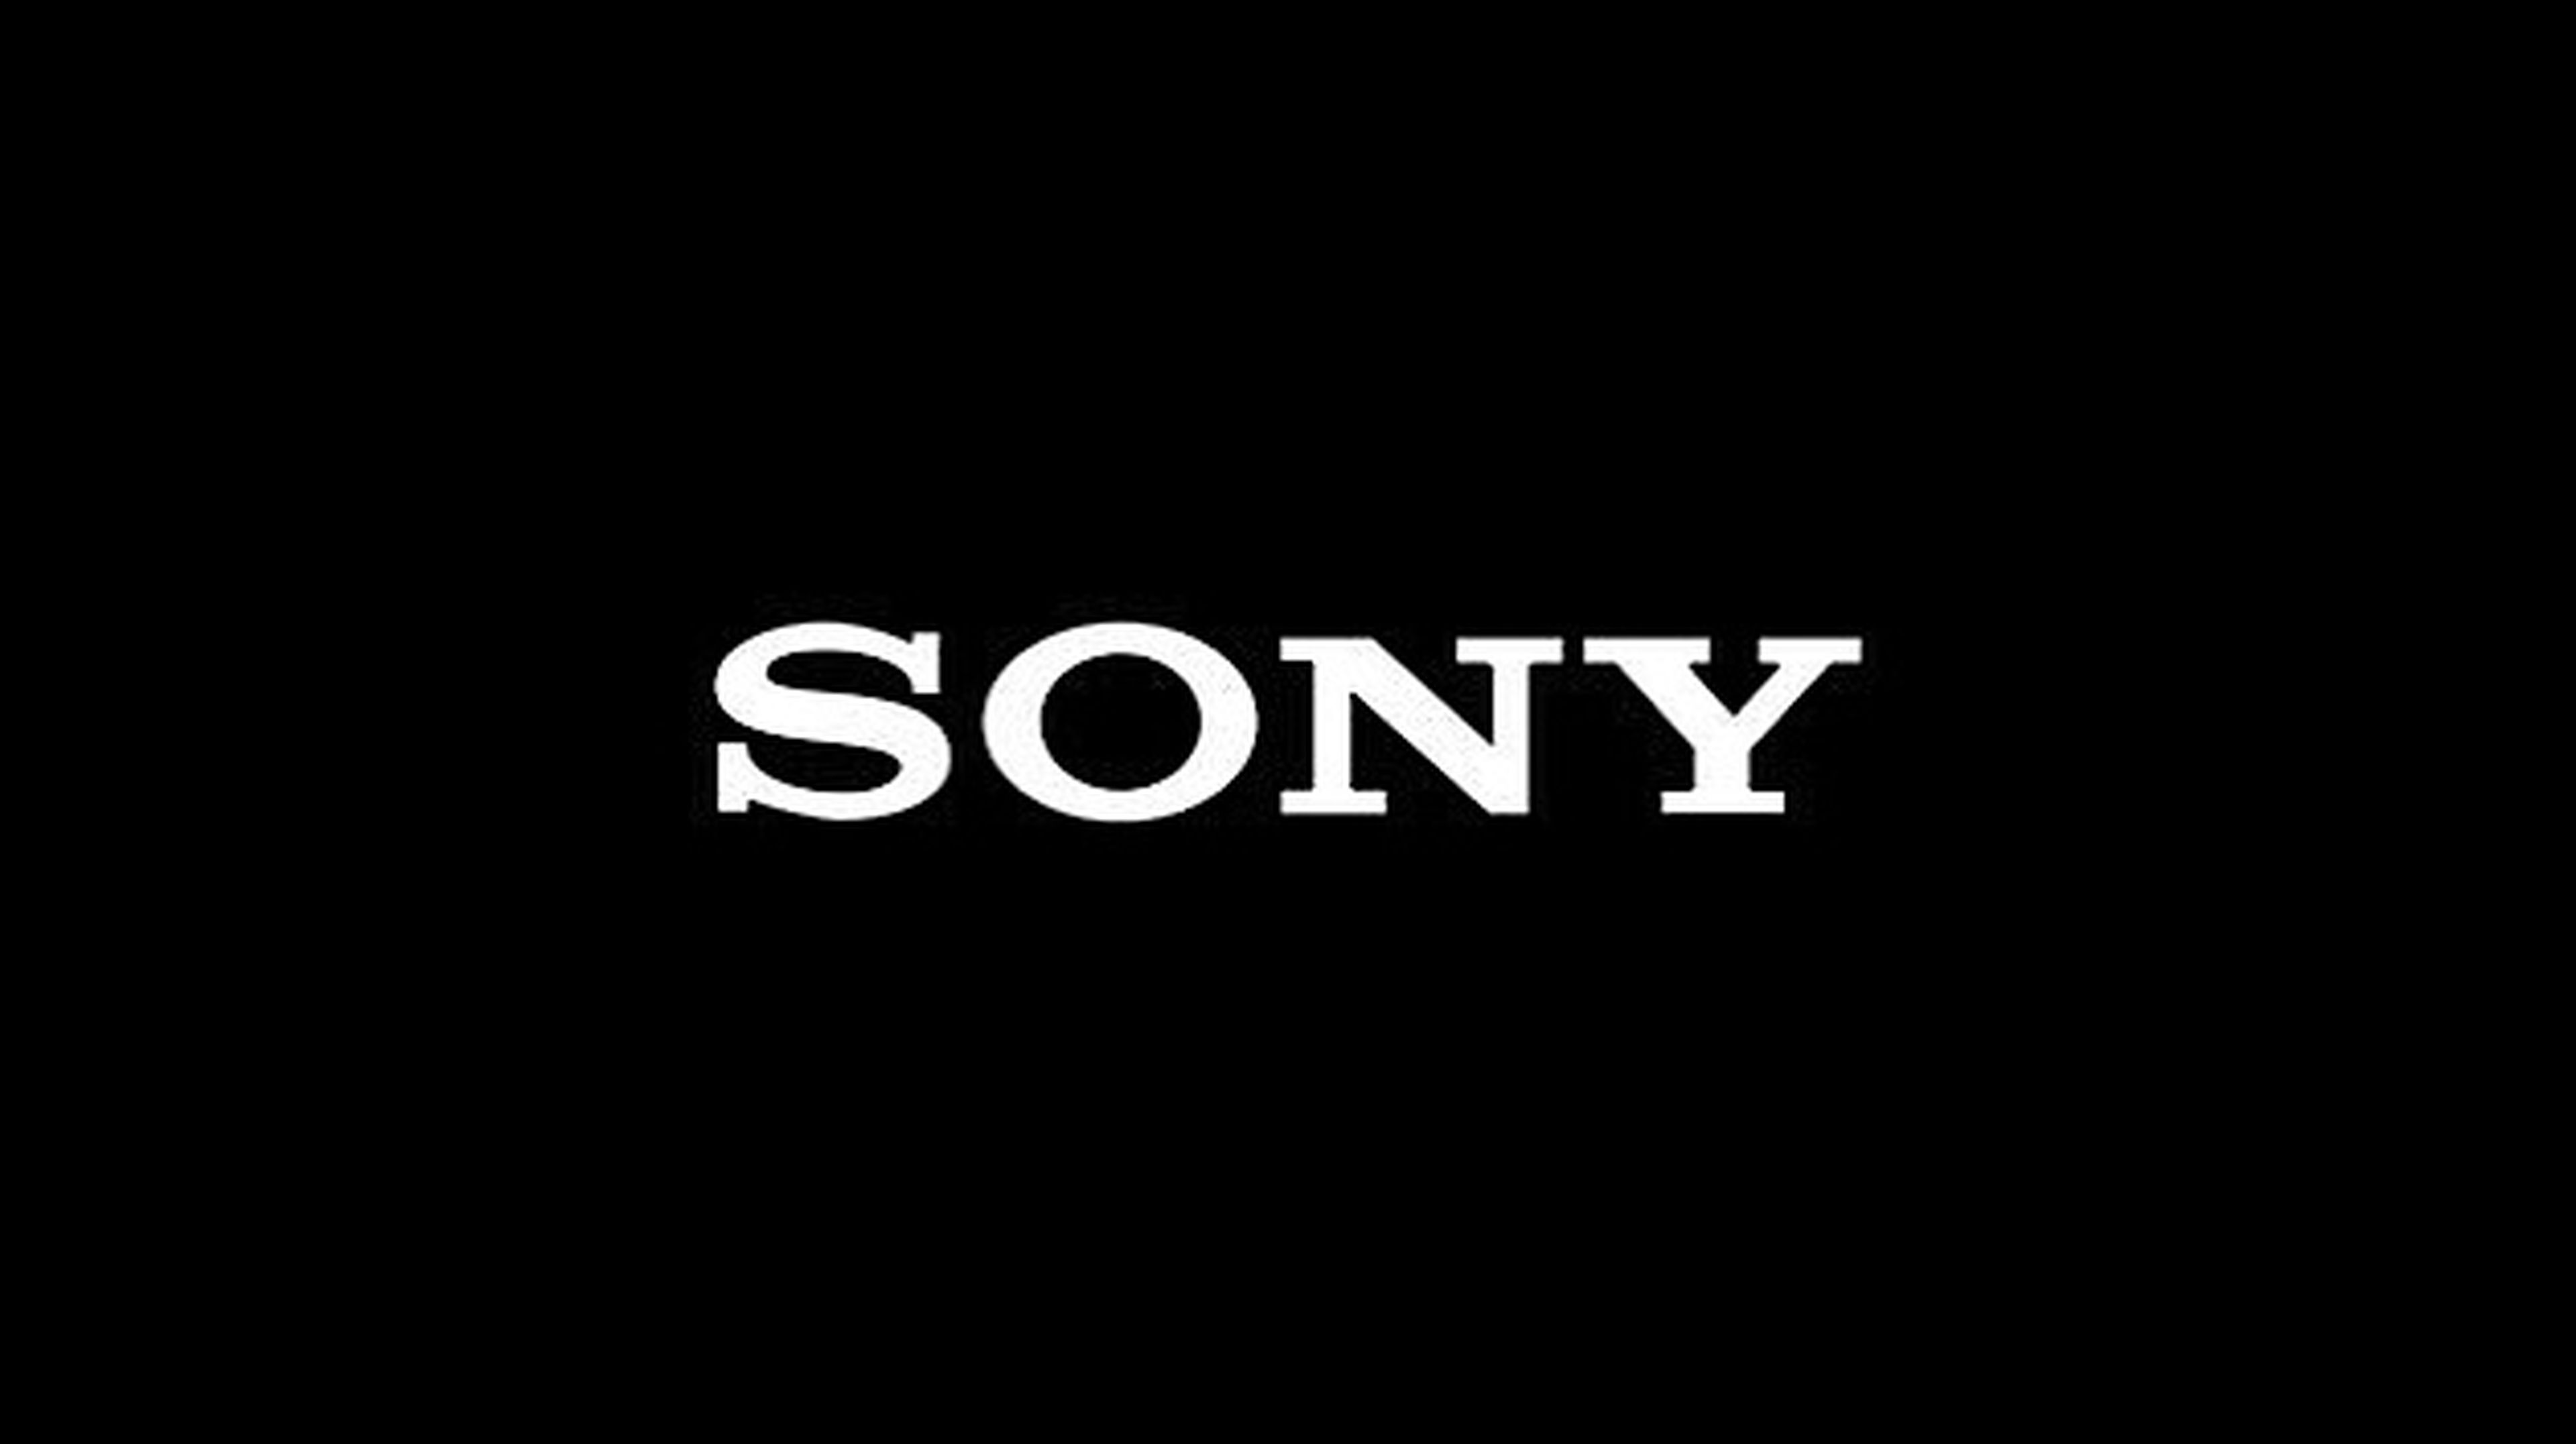 Presentación de Sony en directo